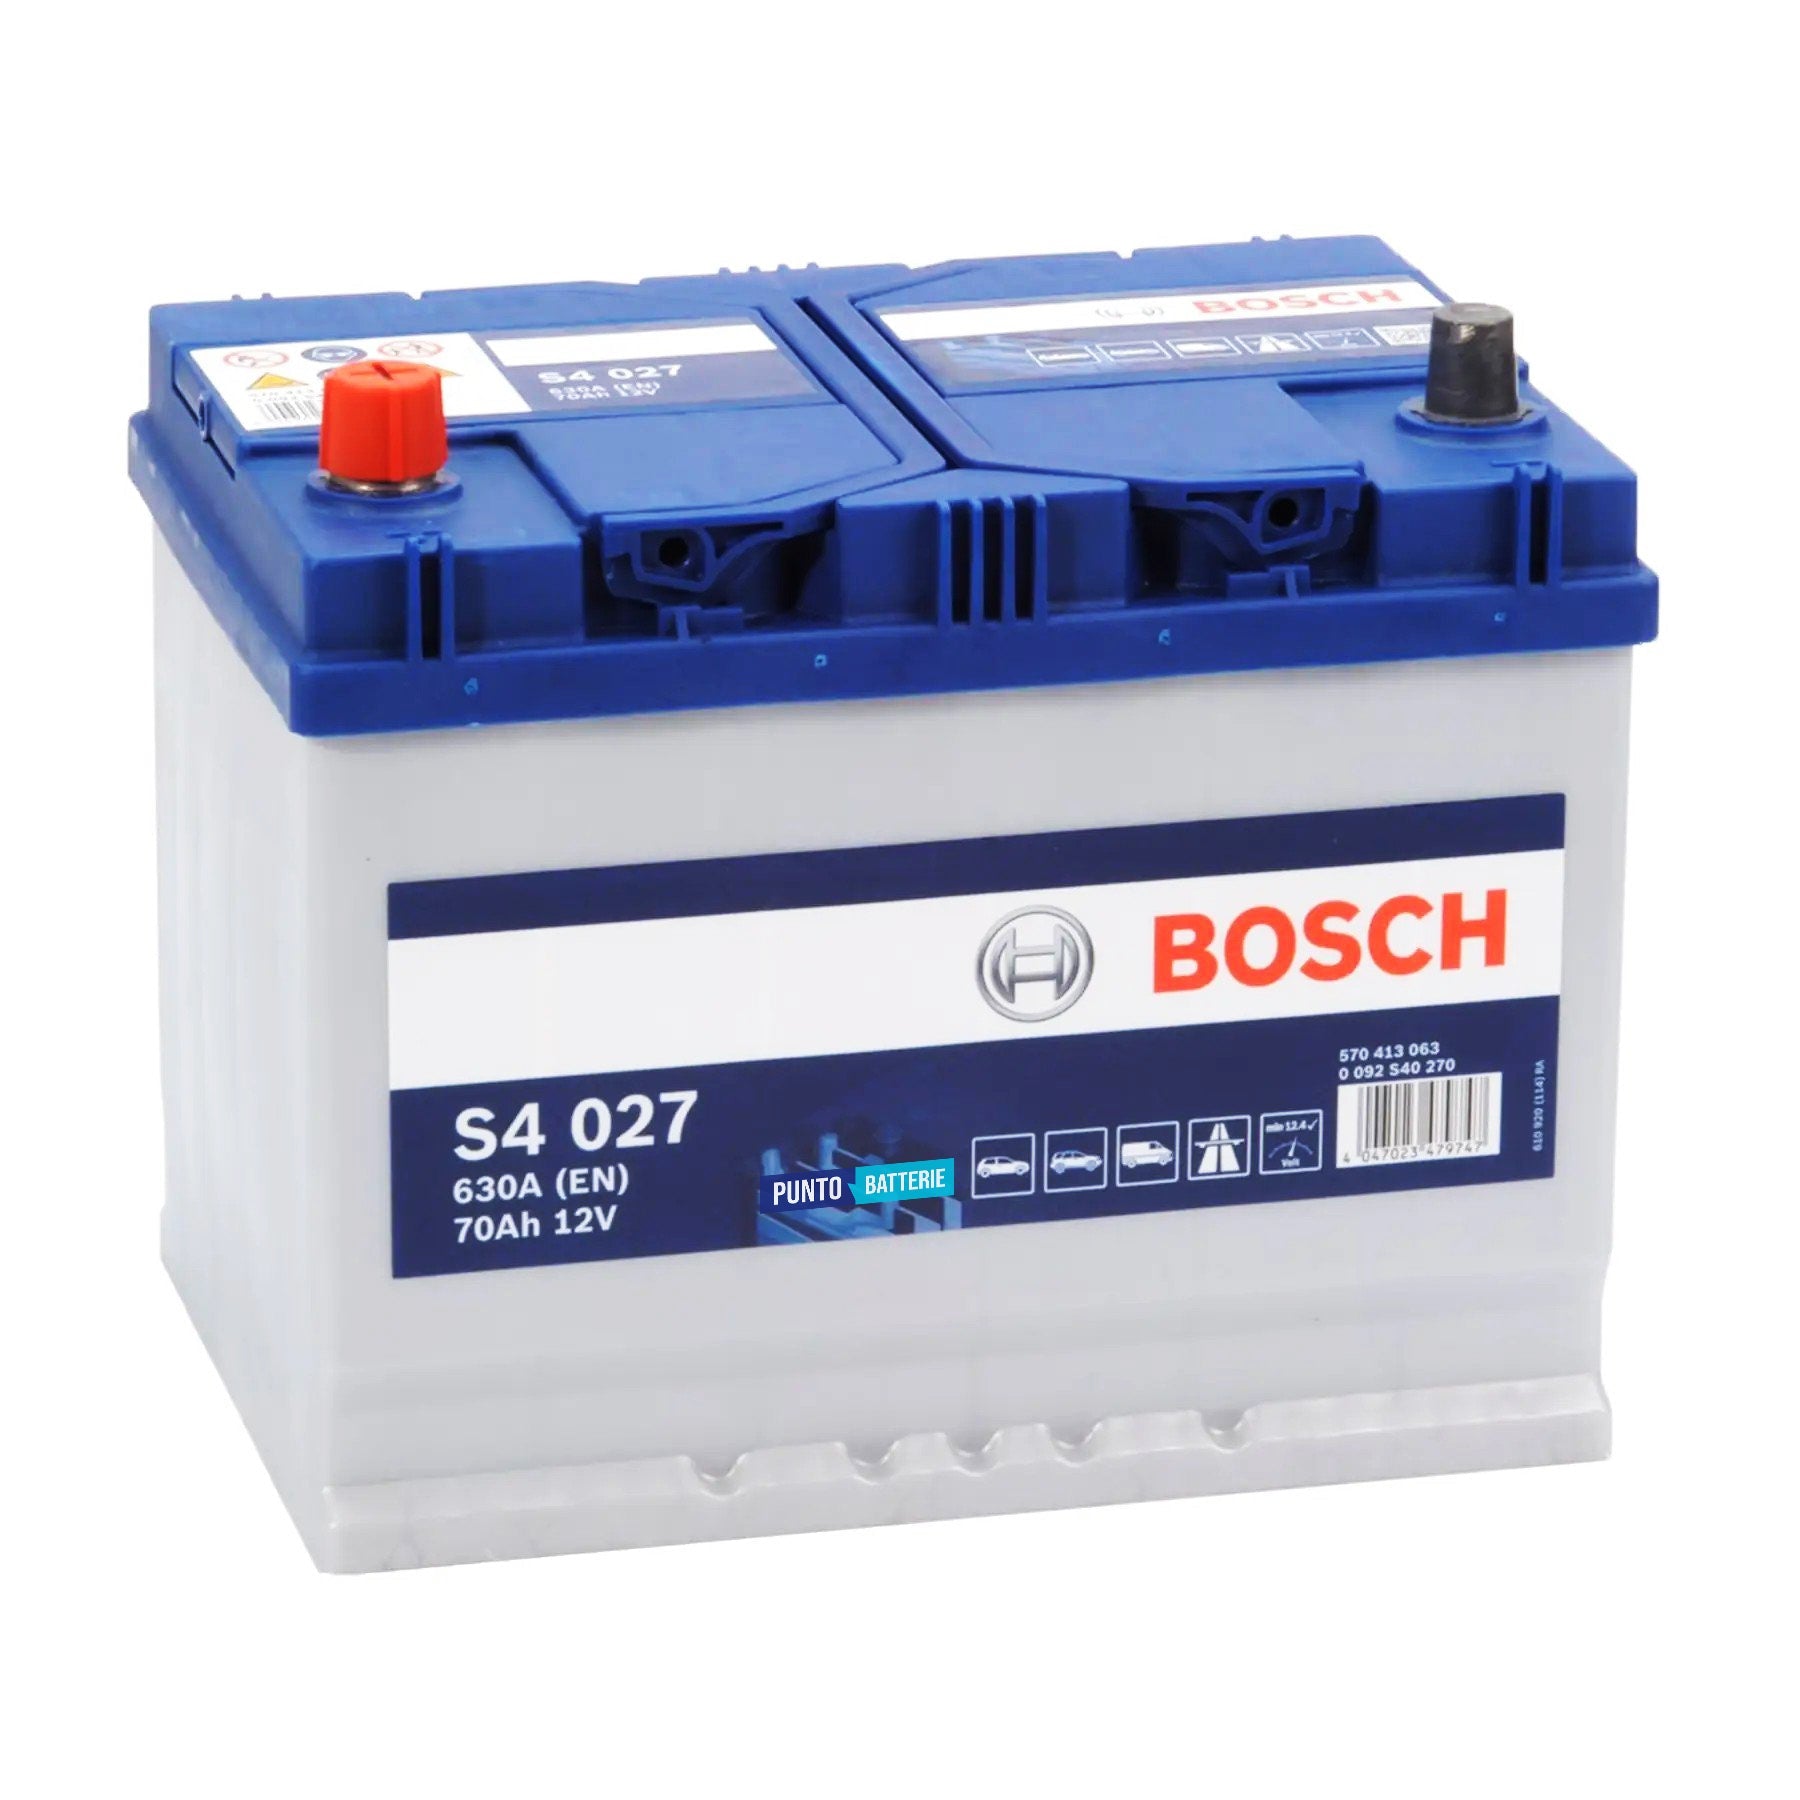 Batteria originale Bosch S4 S4 027, dimensioni 260 x 175 x 225, polo positivo a sinistra, 12 volt, 70 amperora, 630 ampere. Batteria per auto e veicoli leggeri.